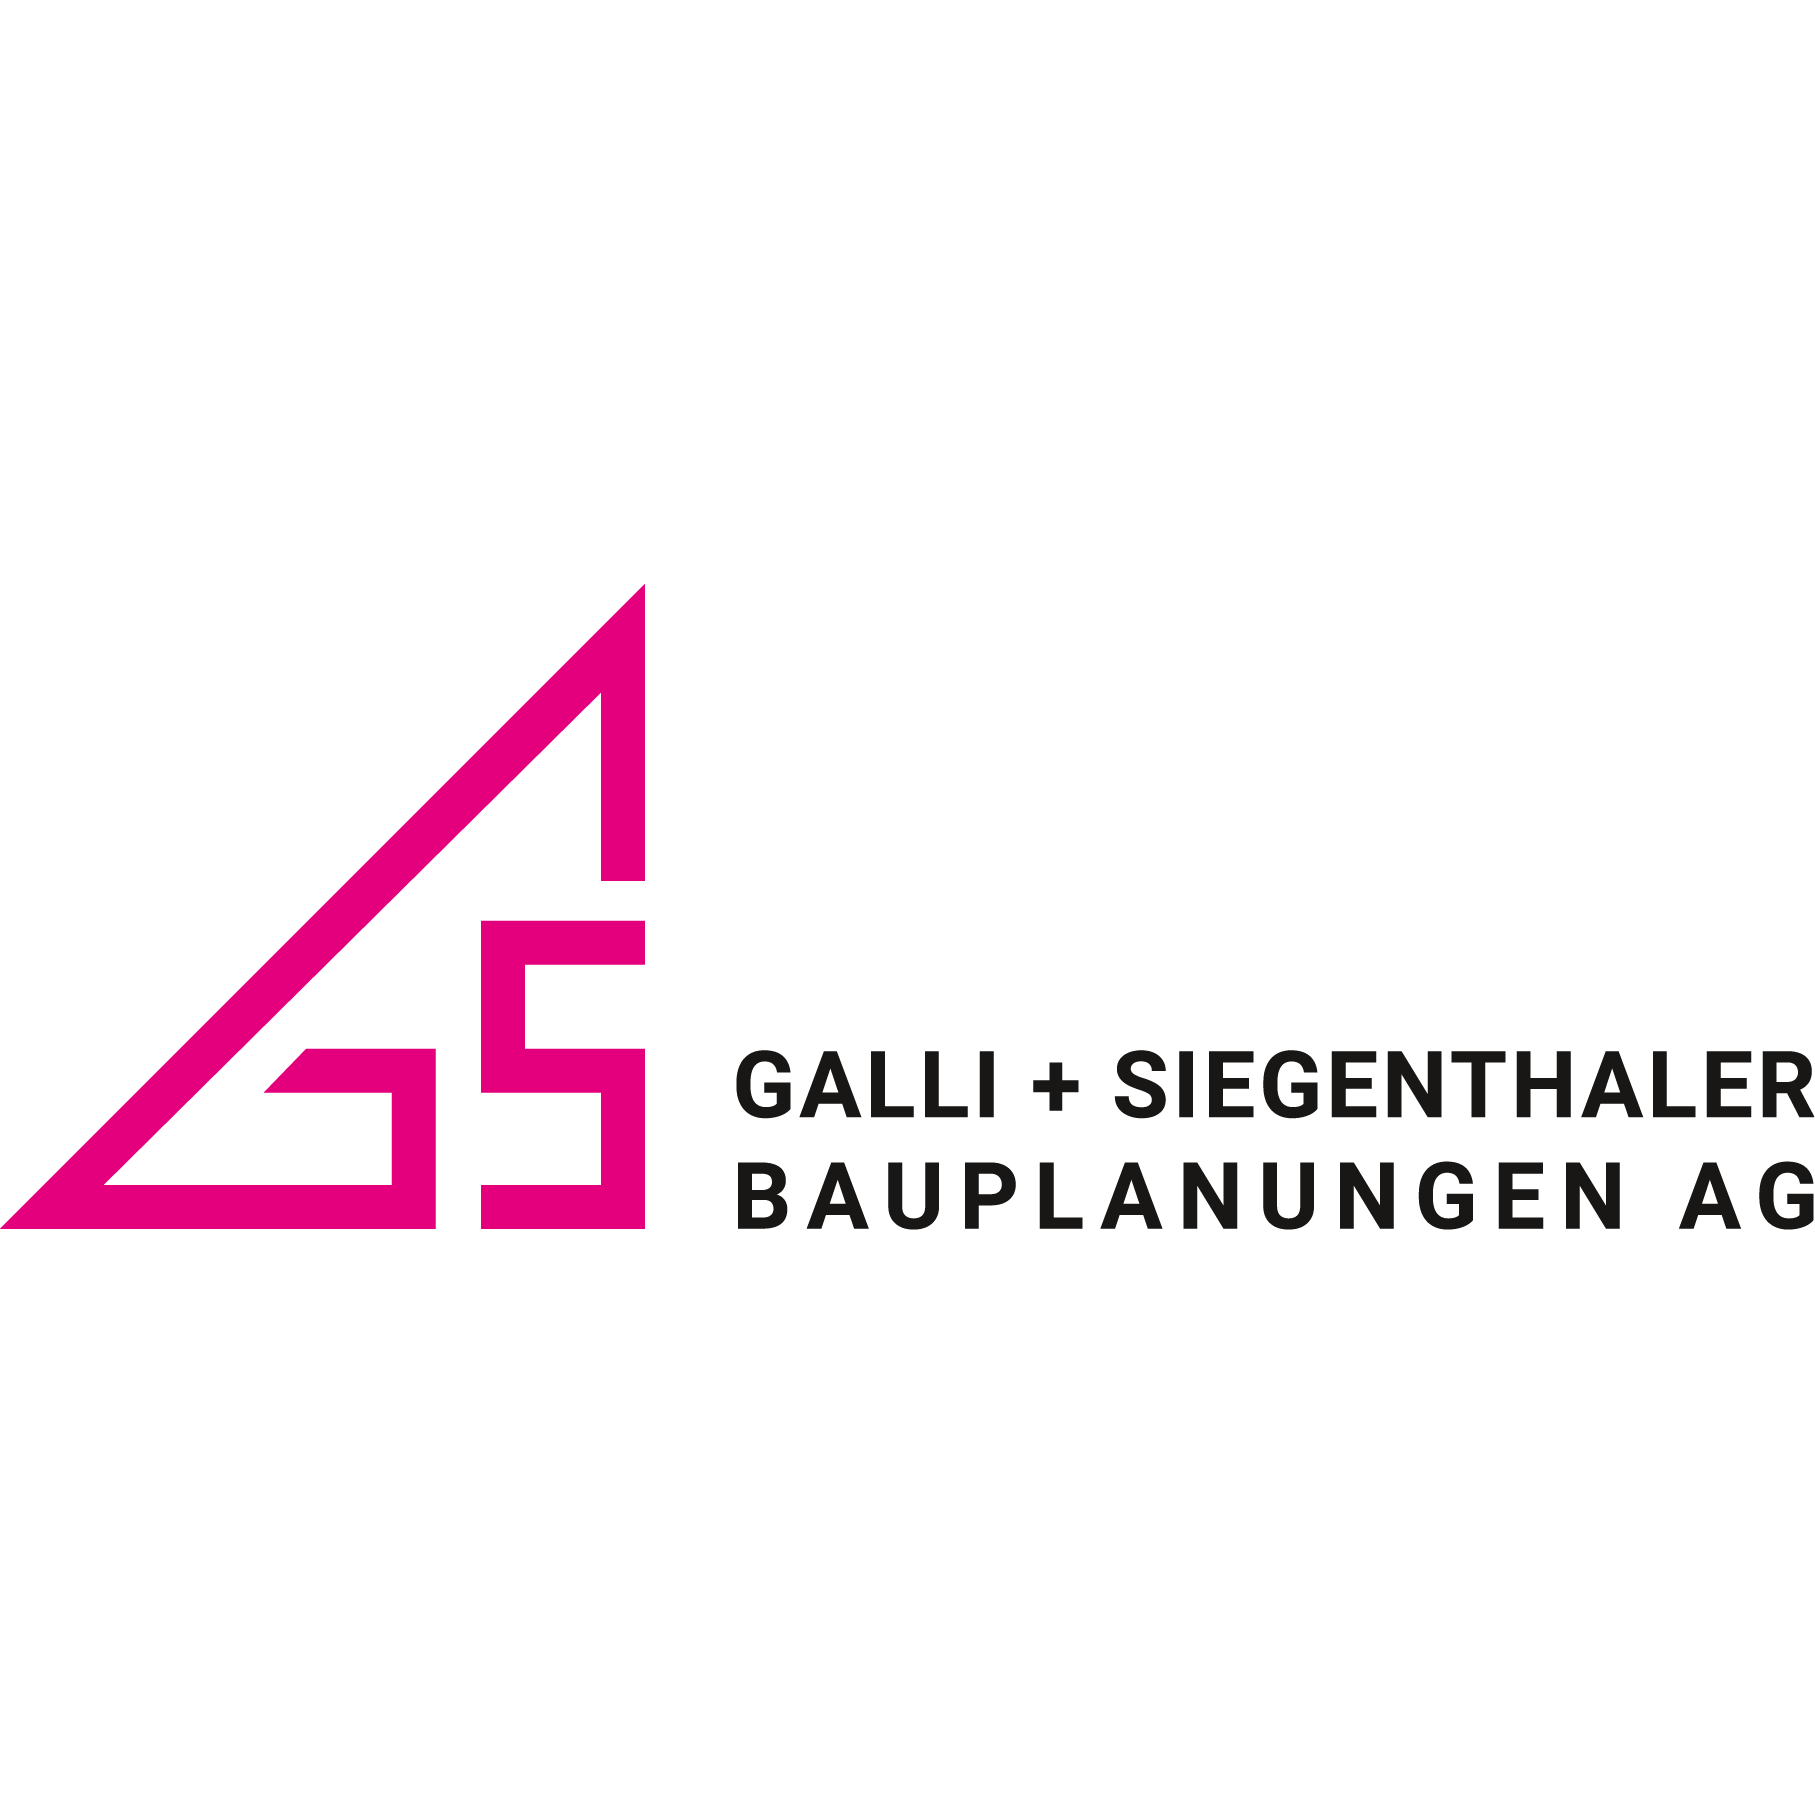 Galli + Siegenthaler Bauplanungen AG Logo